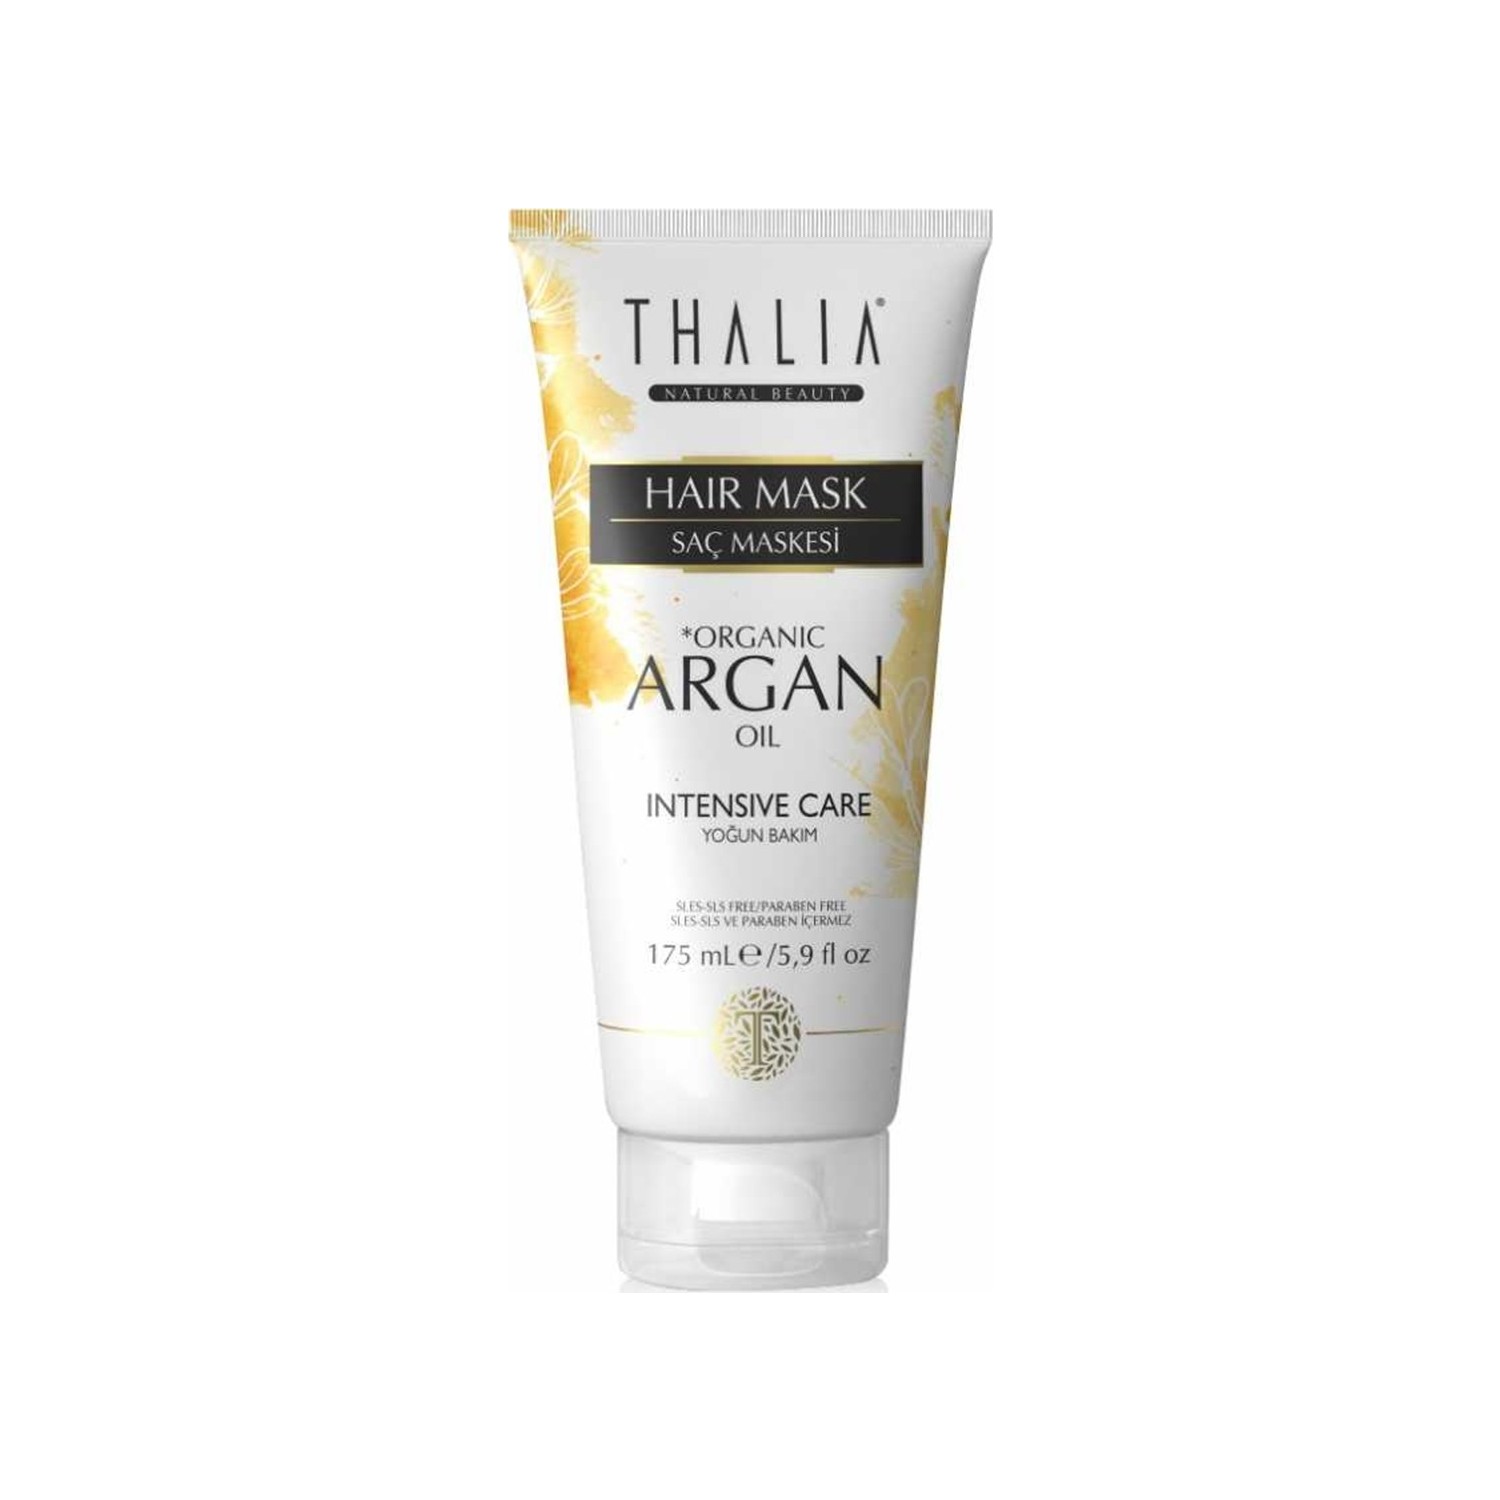 Маска для ухода за волосами Thalia с органическим аргановым маслом, 175 мл маска для ухода за волосами thalia с органическим аргановым маслом 2 x 175 мл